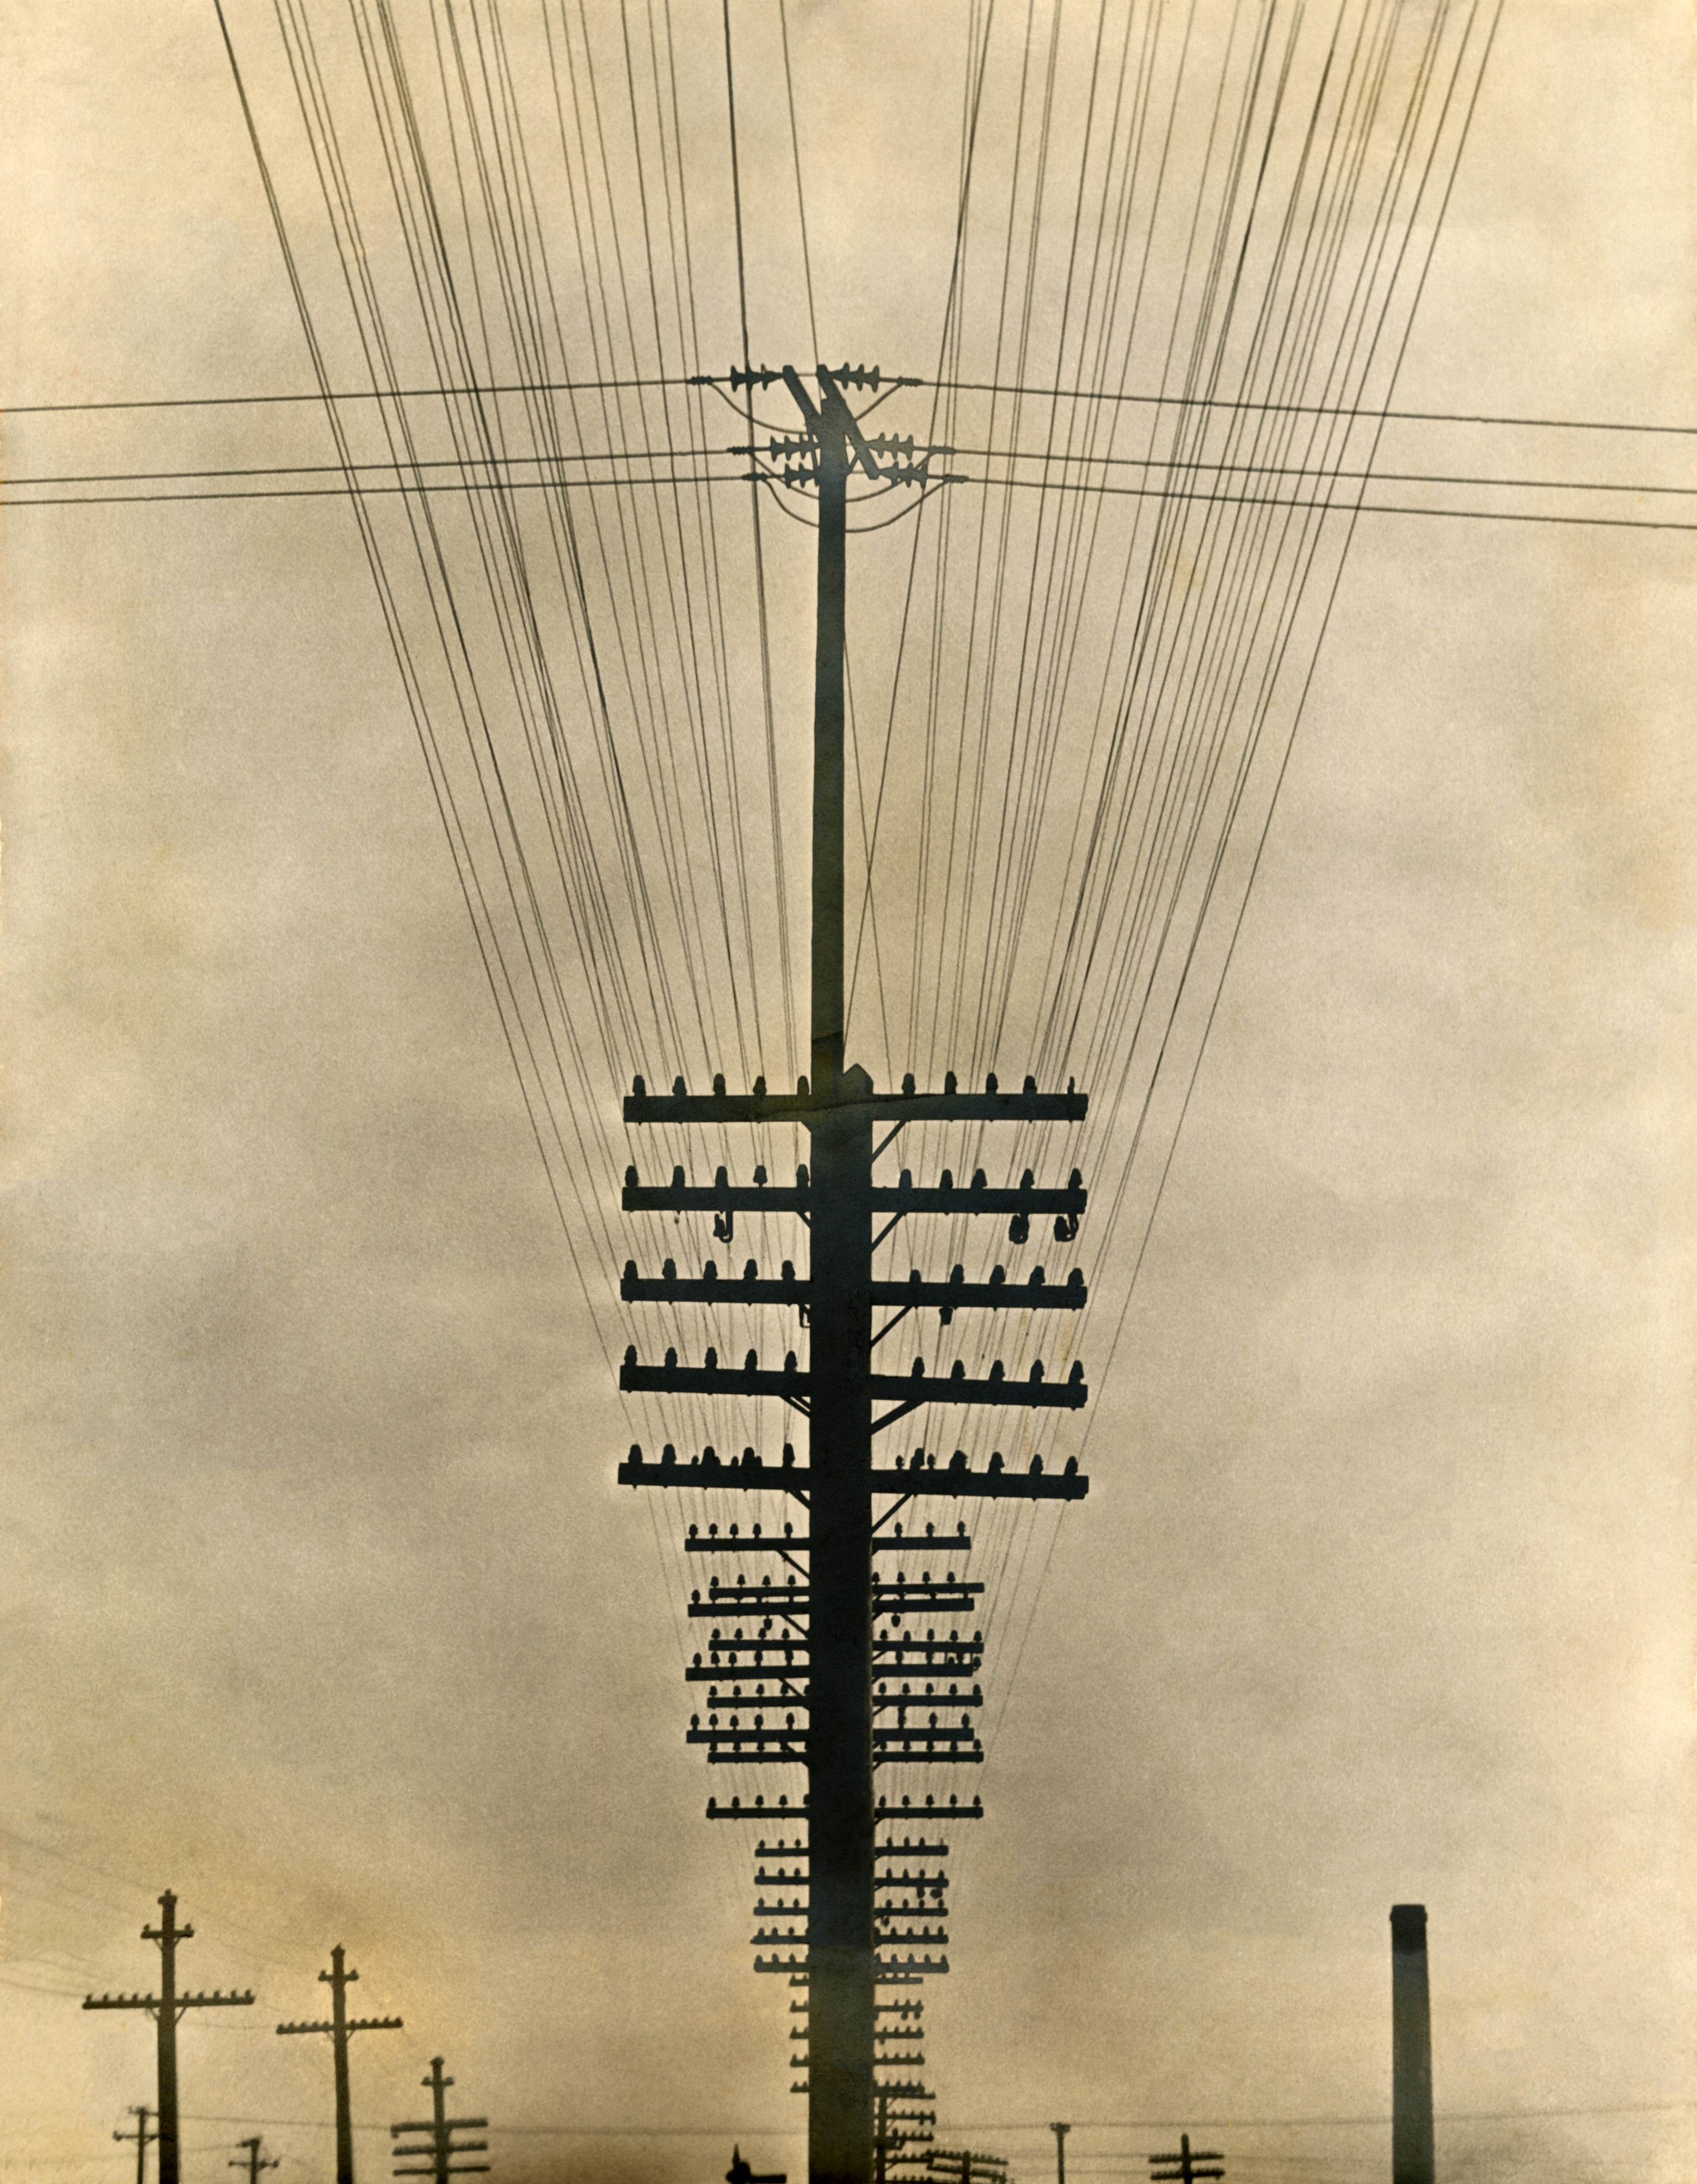 Tina Modotti. Vista parcial del sistema telegráfico, hacia 1927. Colección y Archivo de Fundación Televisa